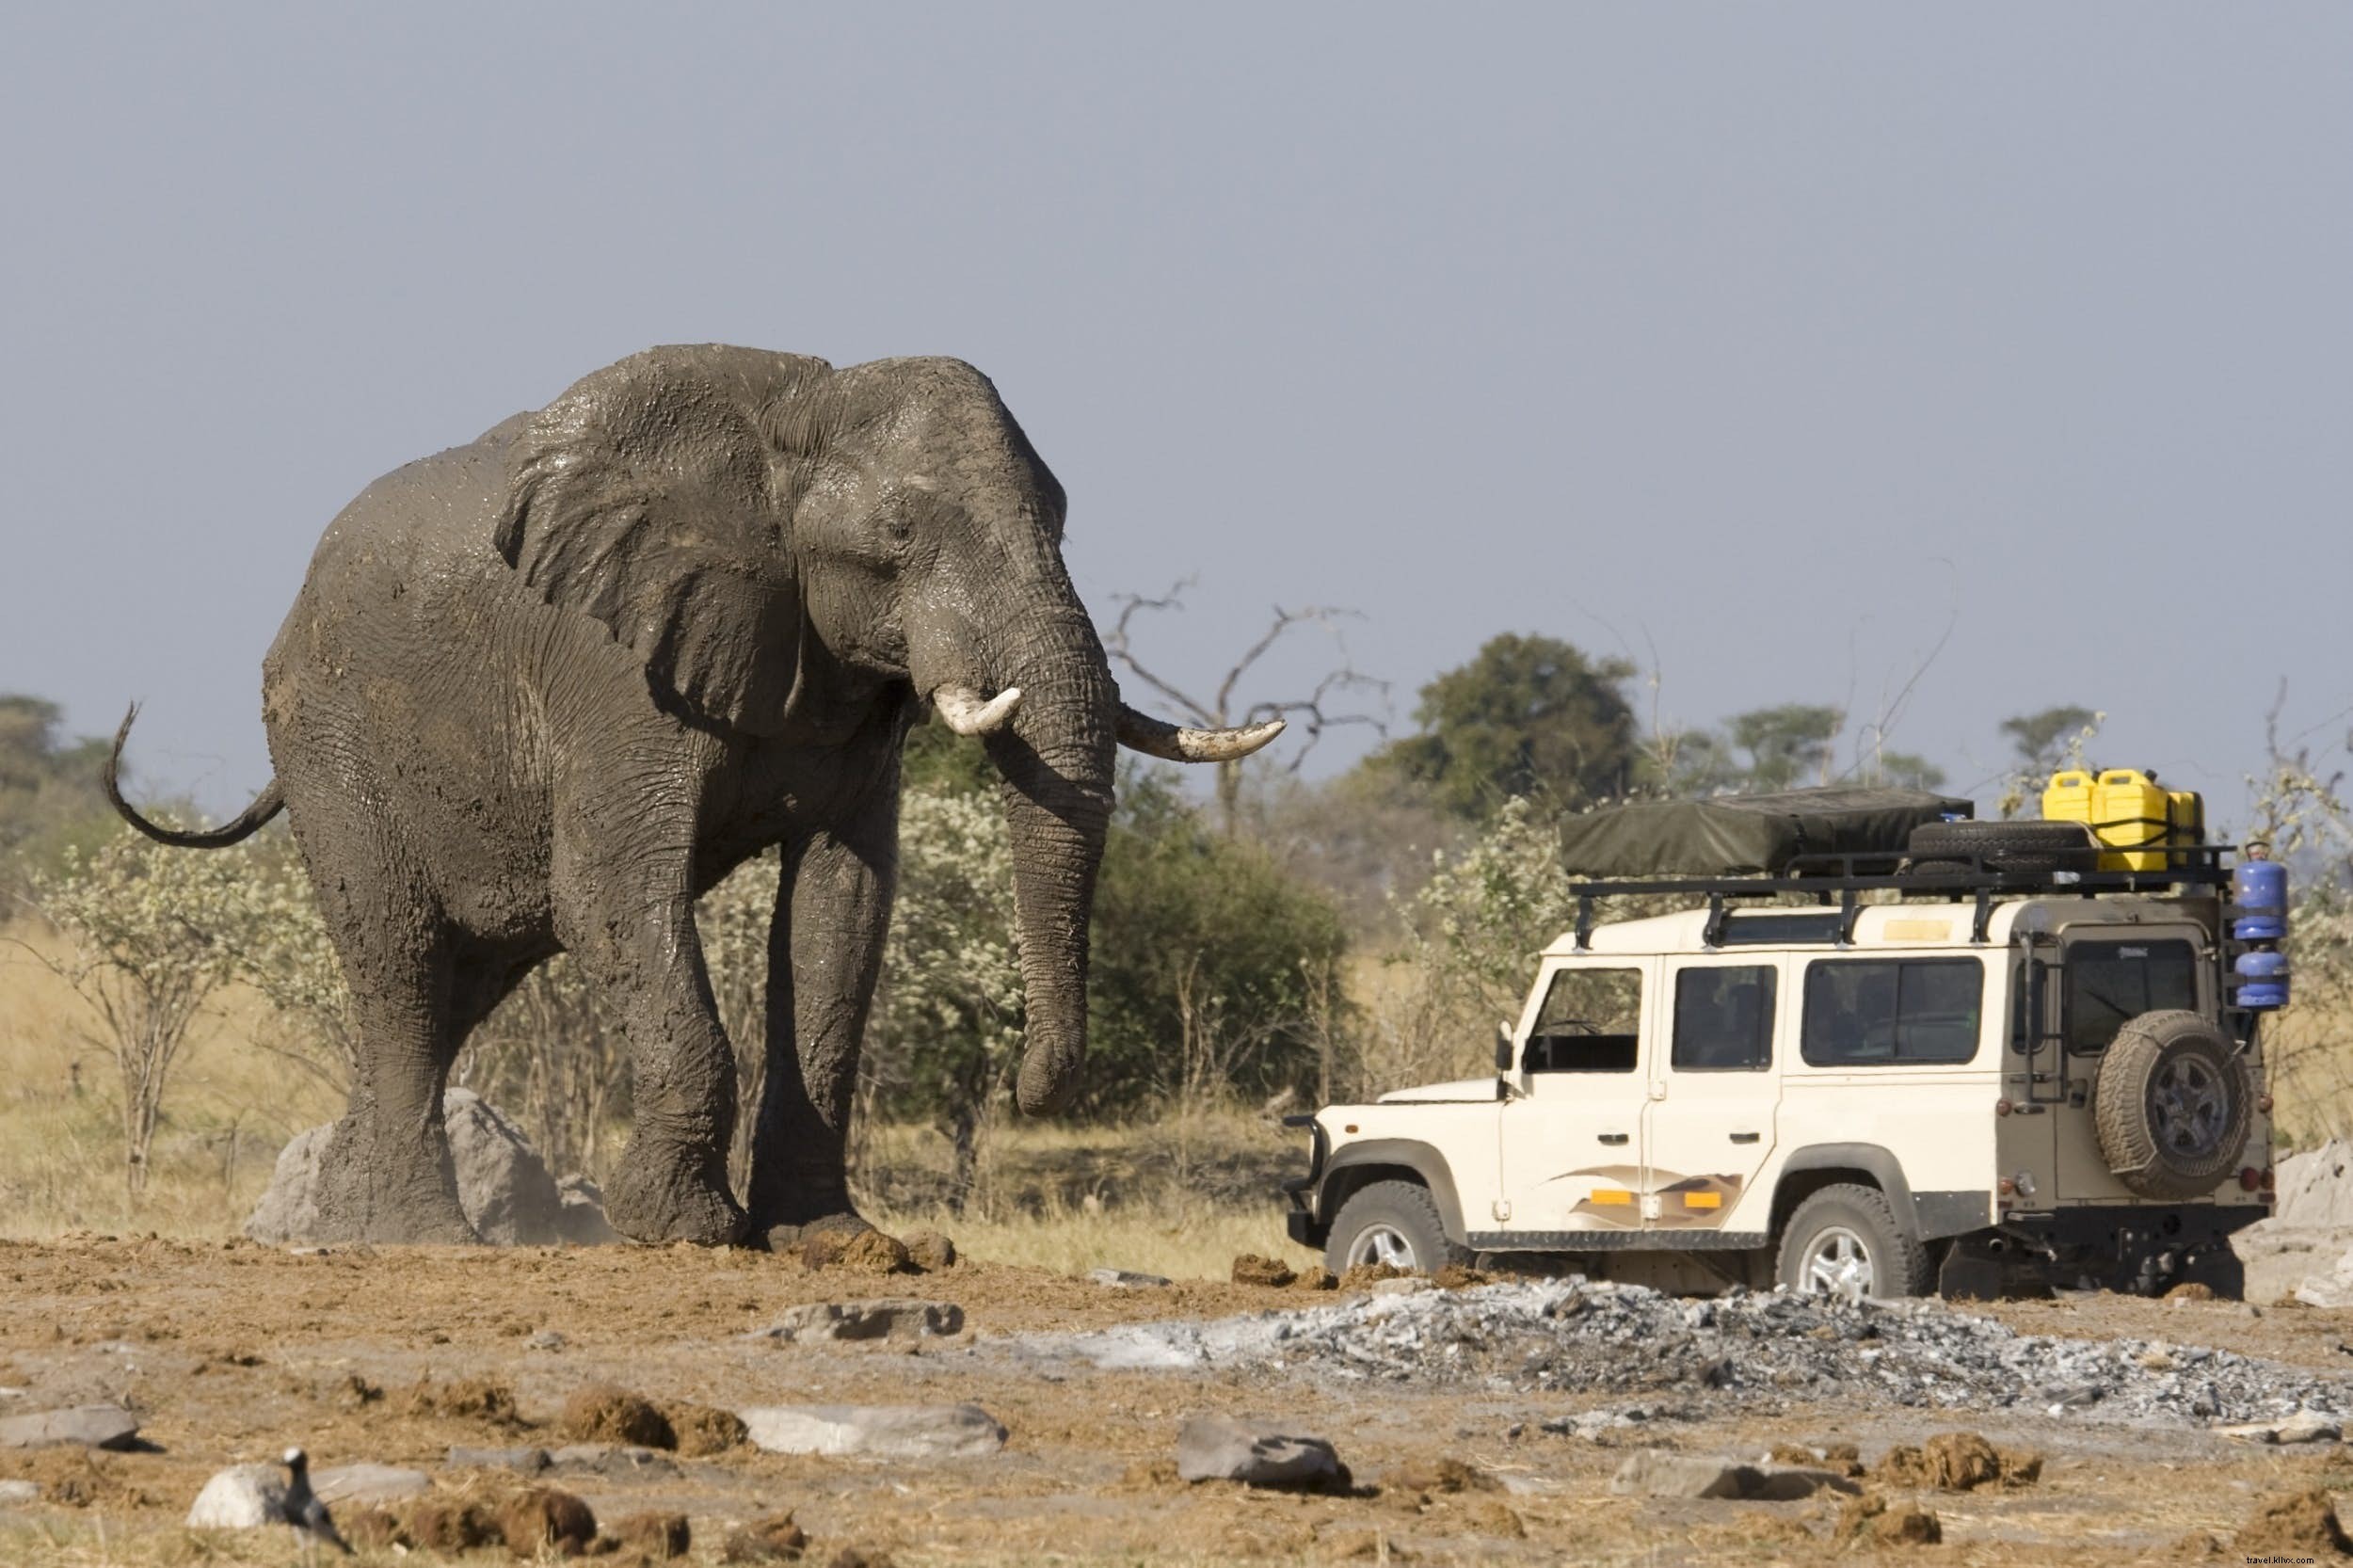 Sei pronto per un safari self-drive in Africa? 